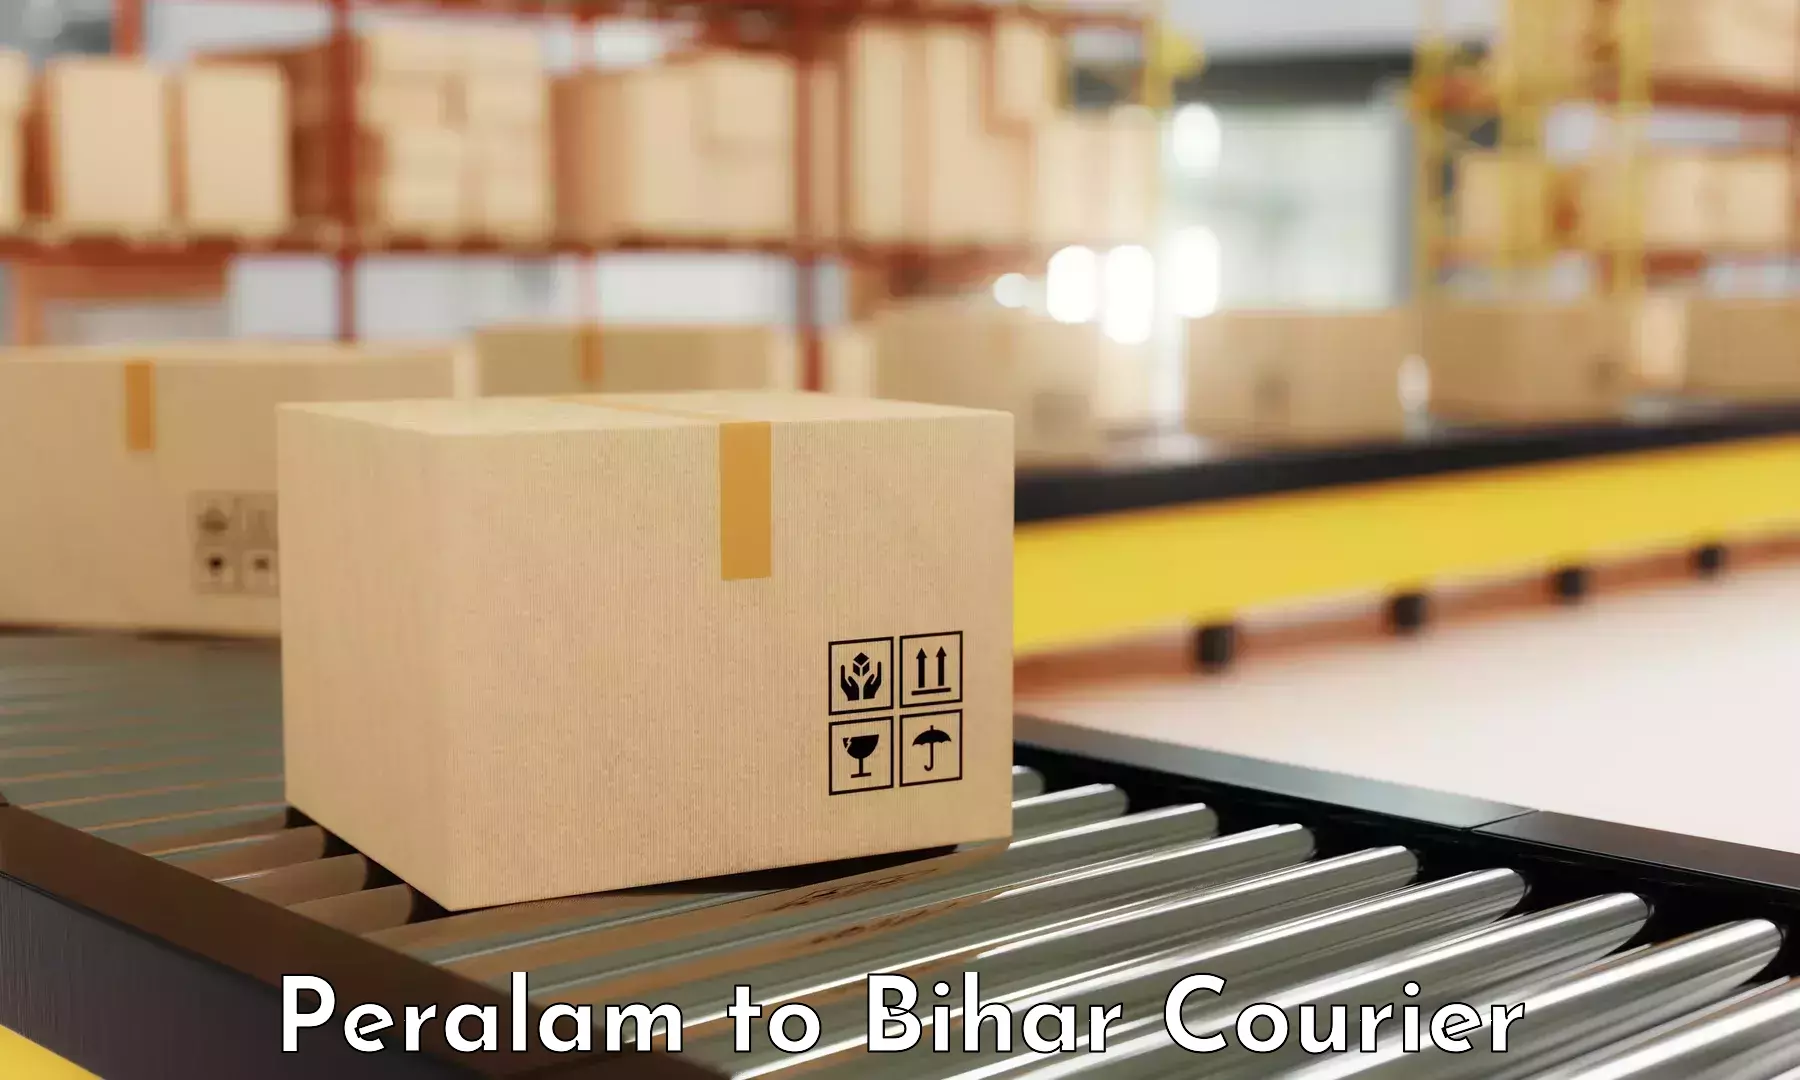 Premium courier solutions Peralam to Supaul